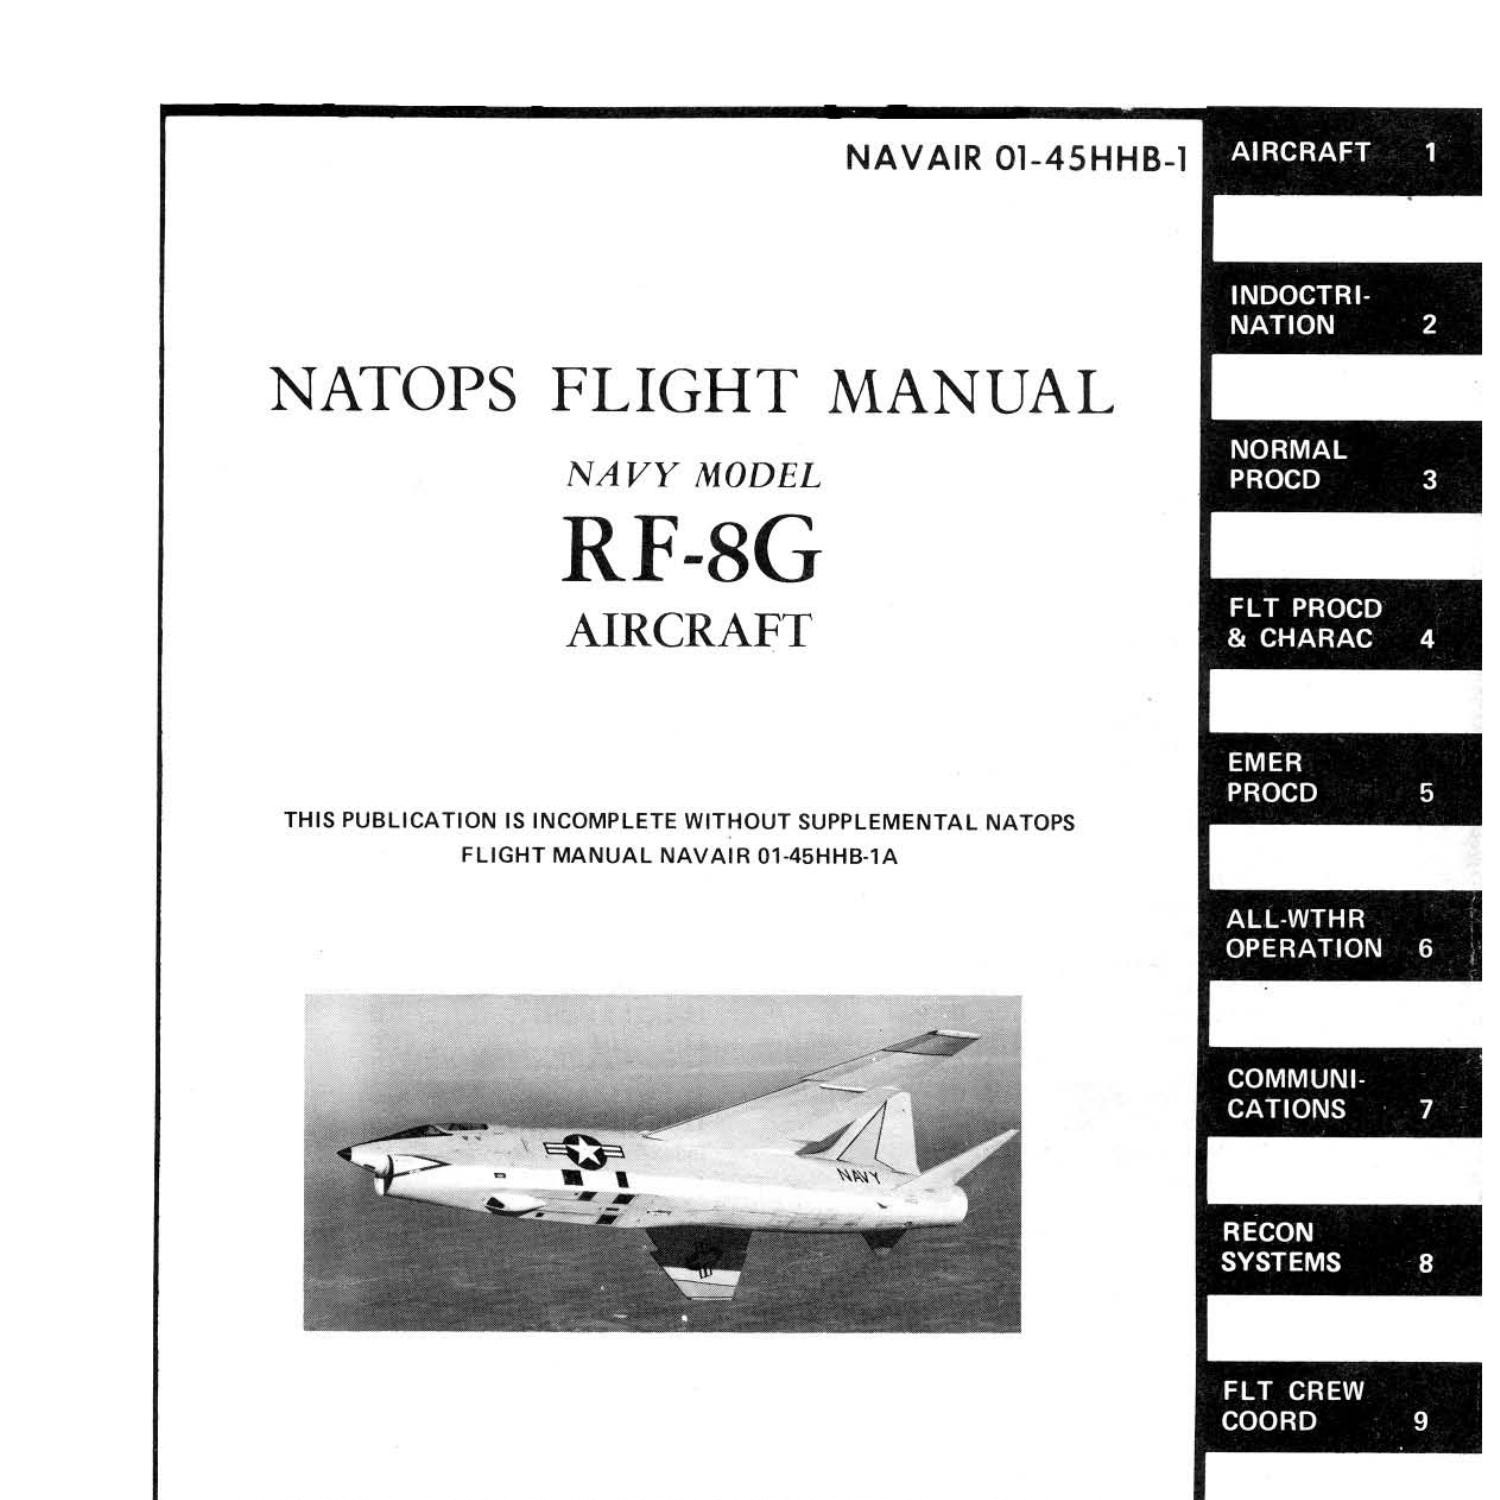 Aviation перевод. Flight manual. Flight manual f-14b. Performance manual aircraft. Flight manual Cover.